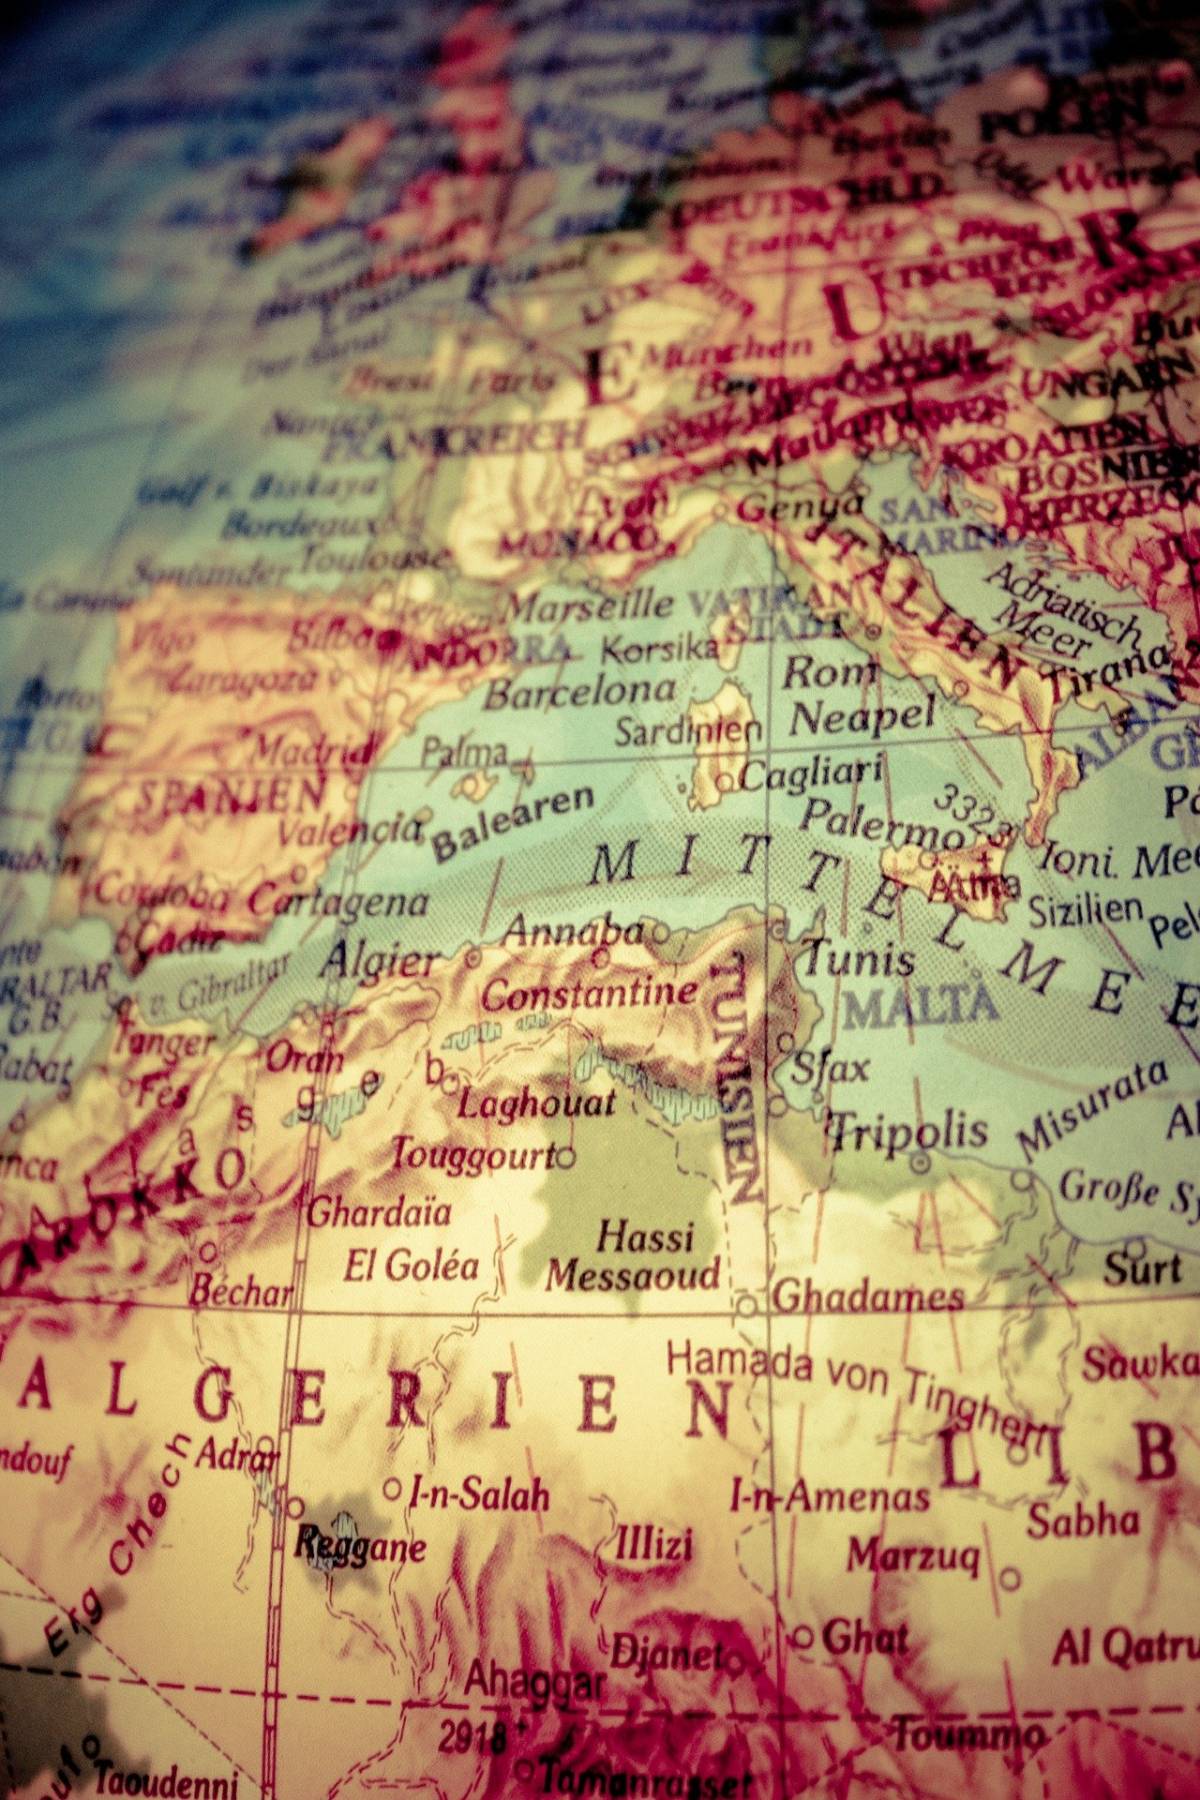 La lunga epopea del Mediterraneo, vera culla di civiltà